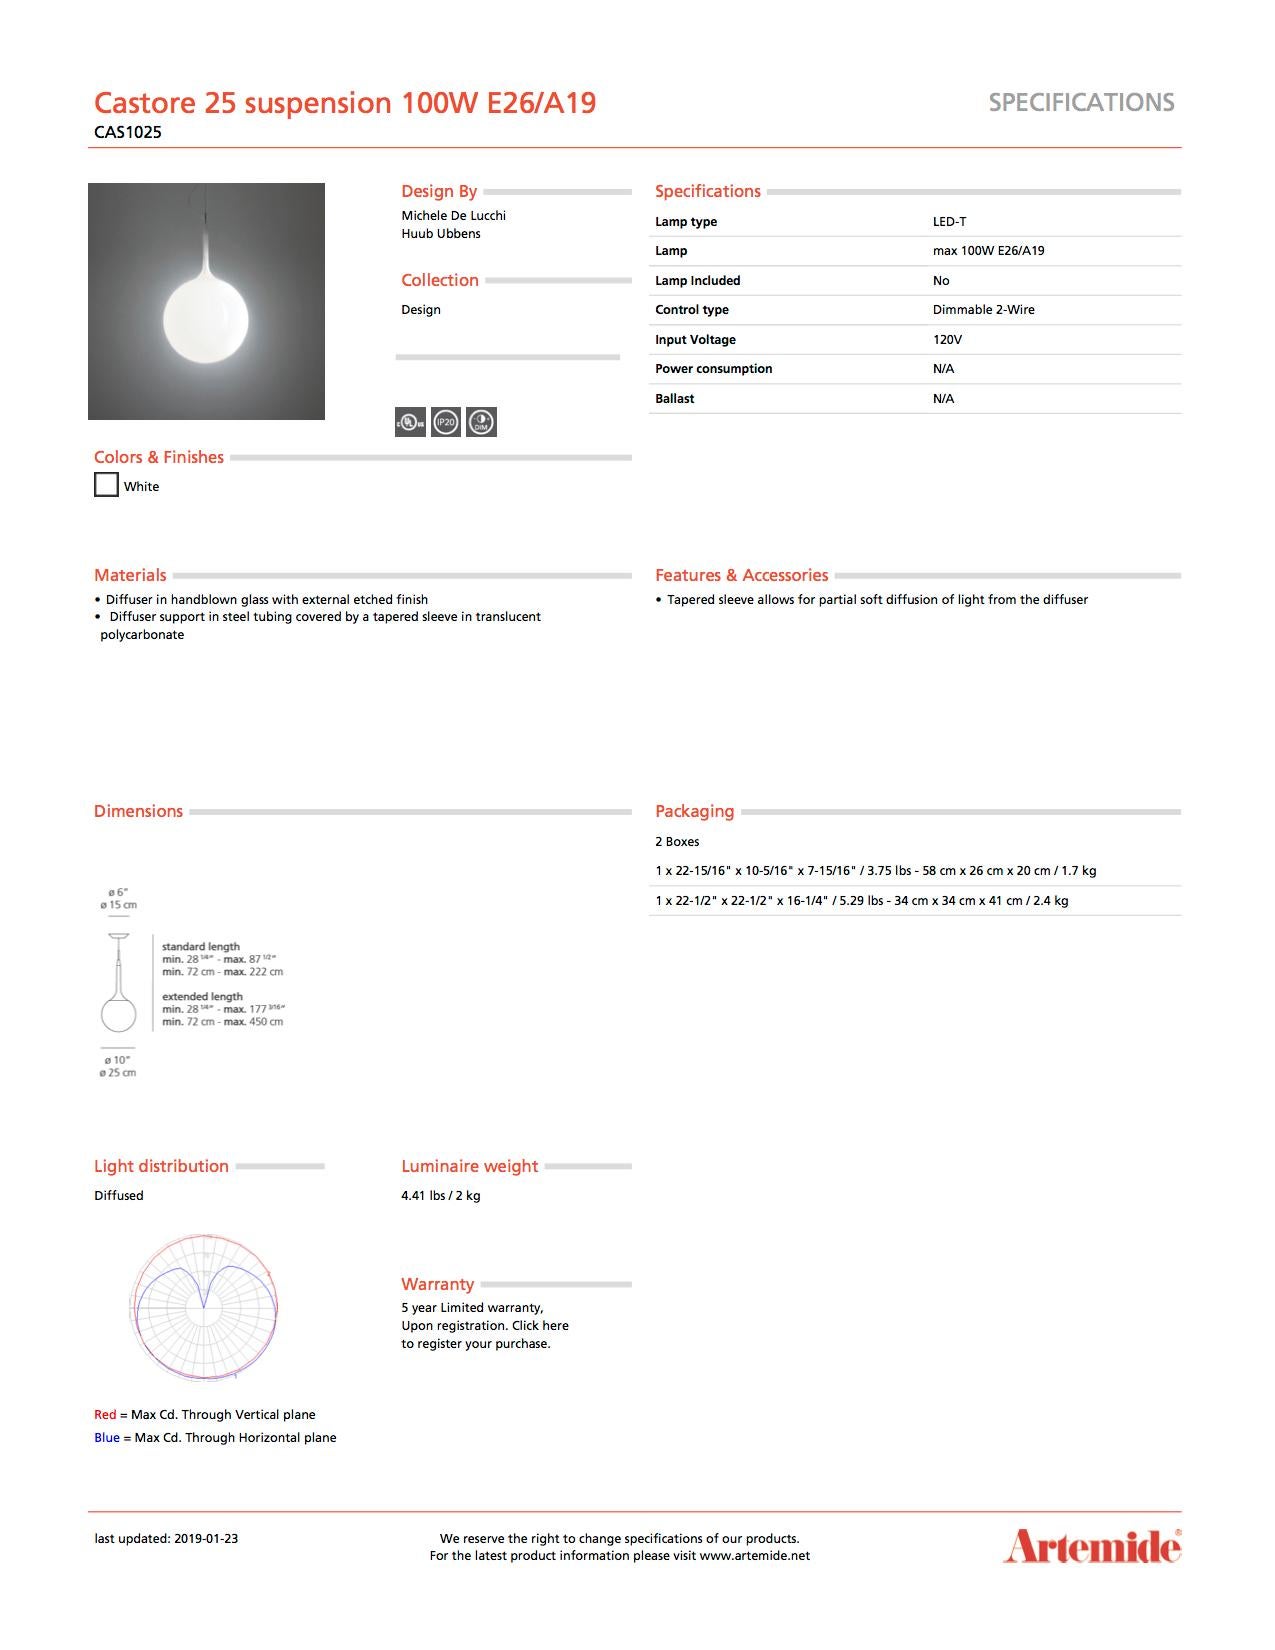 Italian Artemide Castore 25 100W E26/A19 Suspension Light For Sale